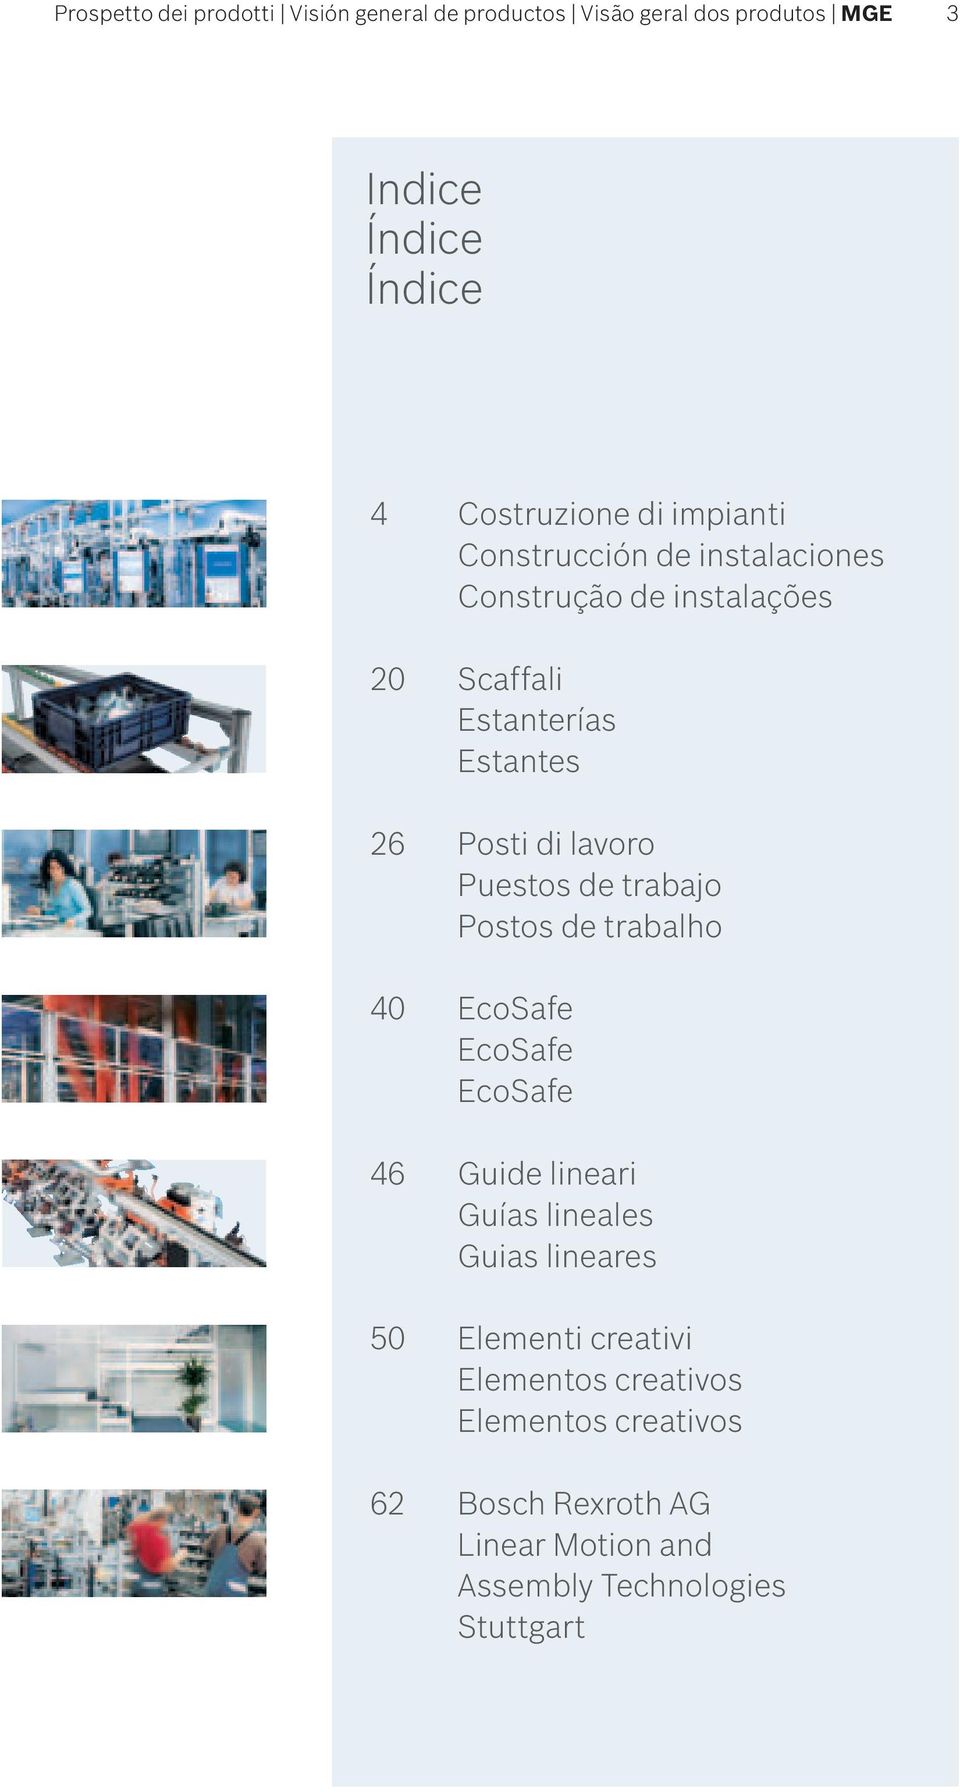 Puestos de trabajo Postos de trabalho 40 EcoSafe EcoSafe EcoSafe 46 Guide lineari Guías lineales Guias lineares 50